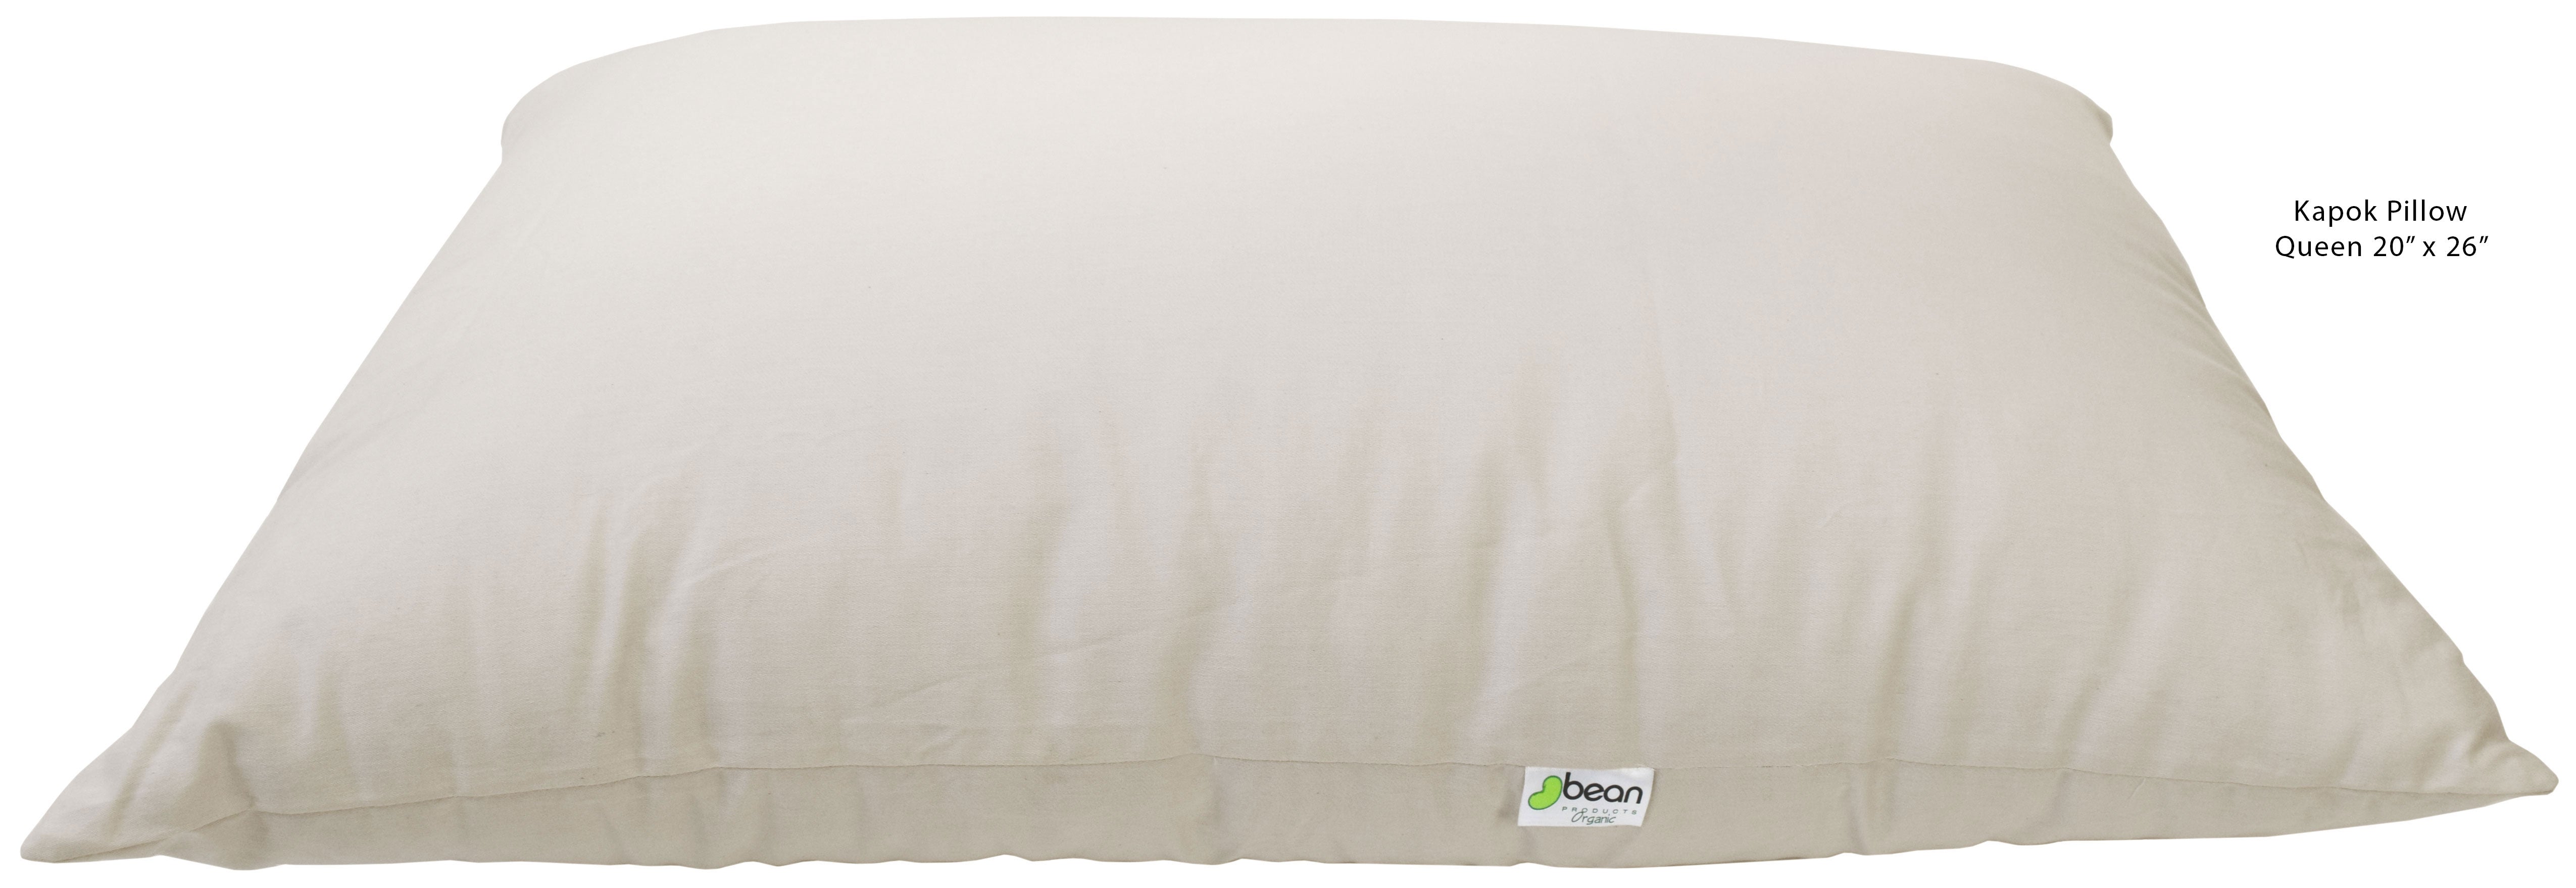 Organic Cotton Kapok Sleep Pillows